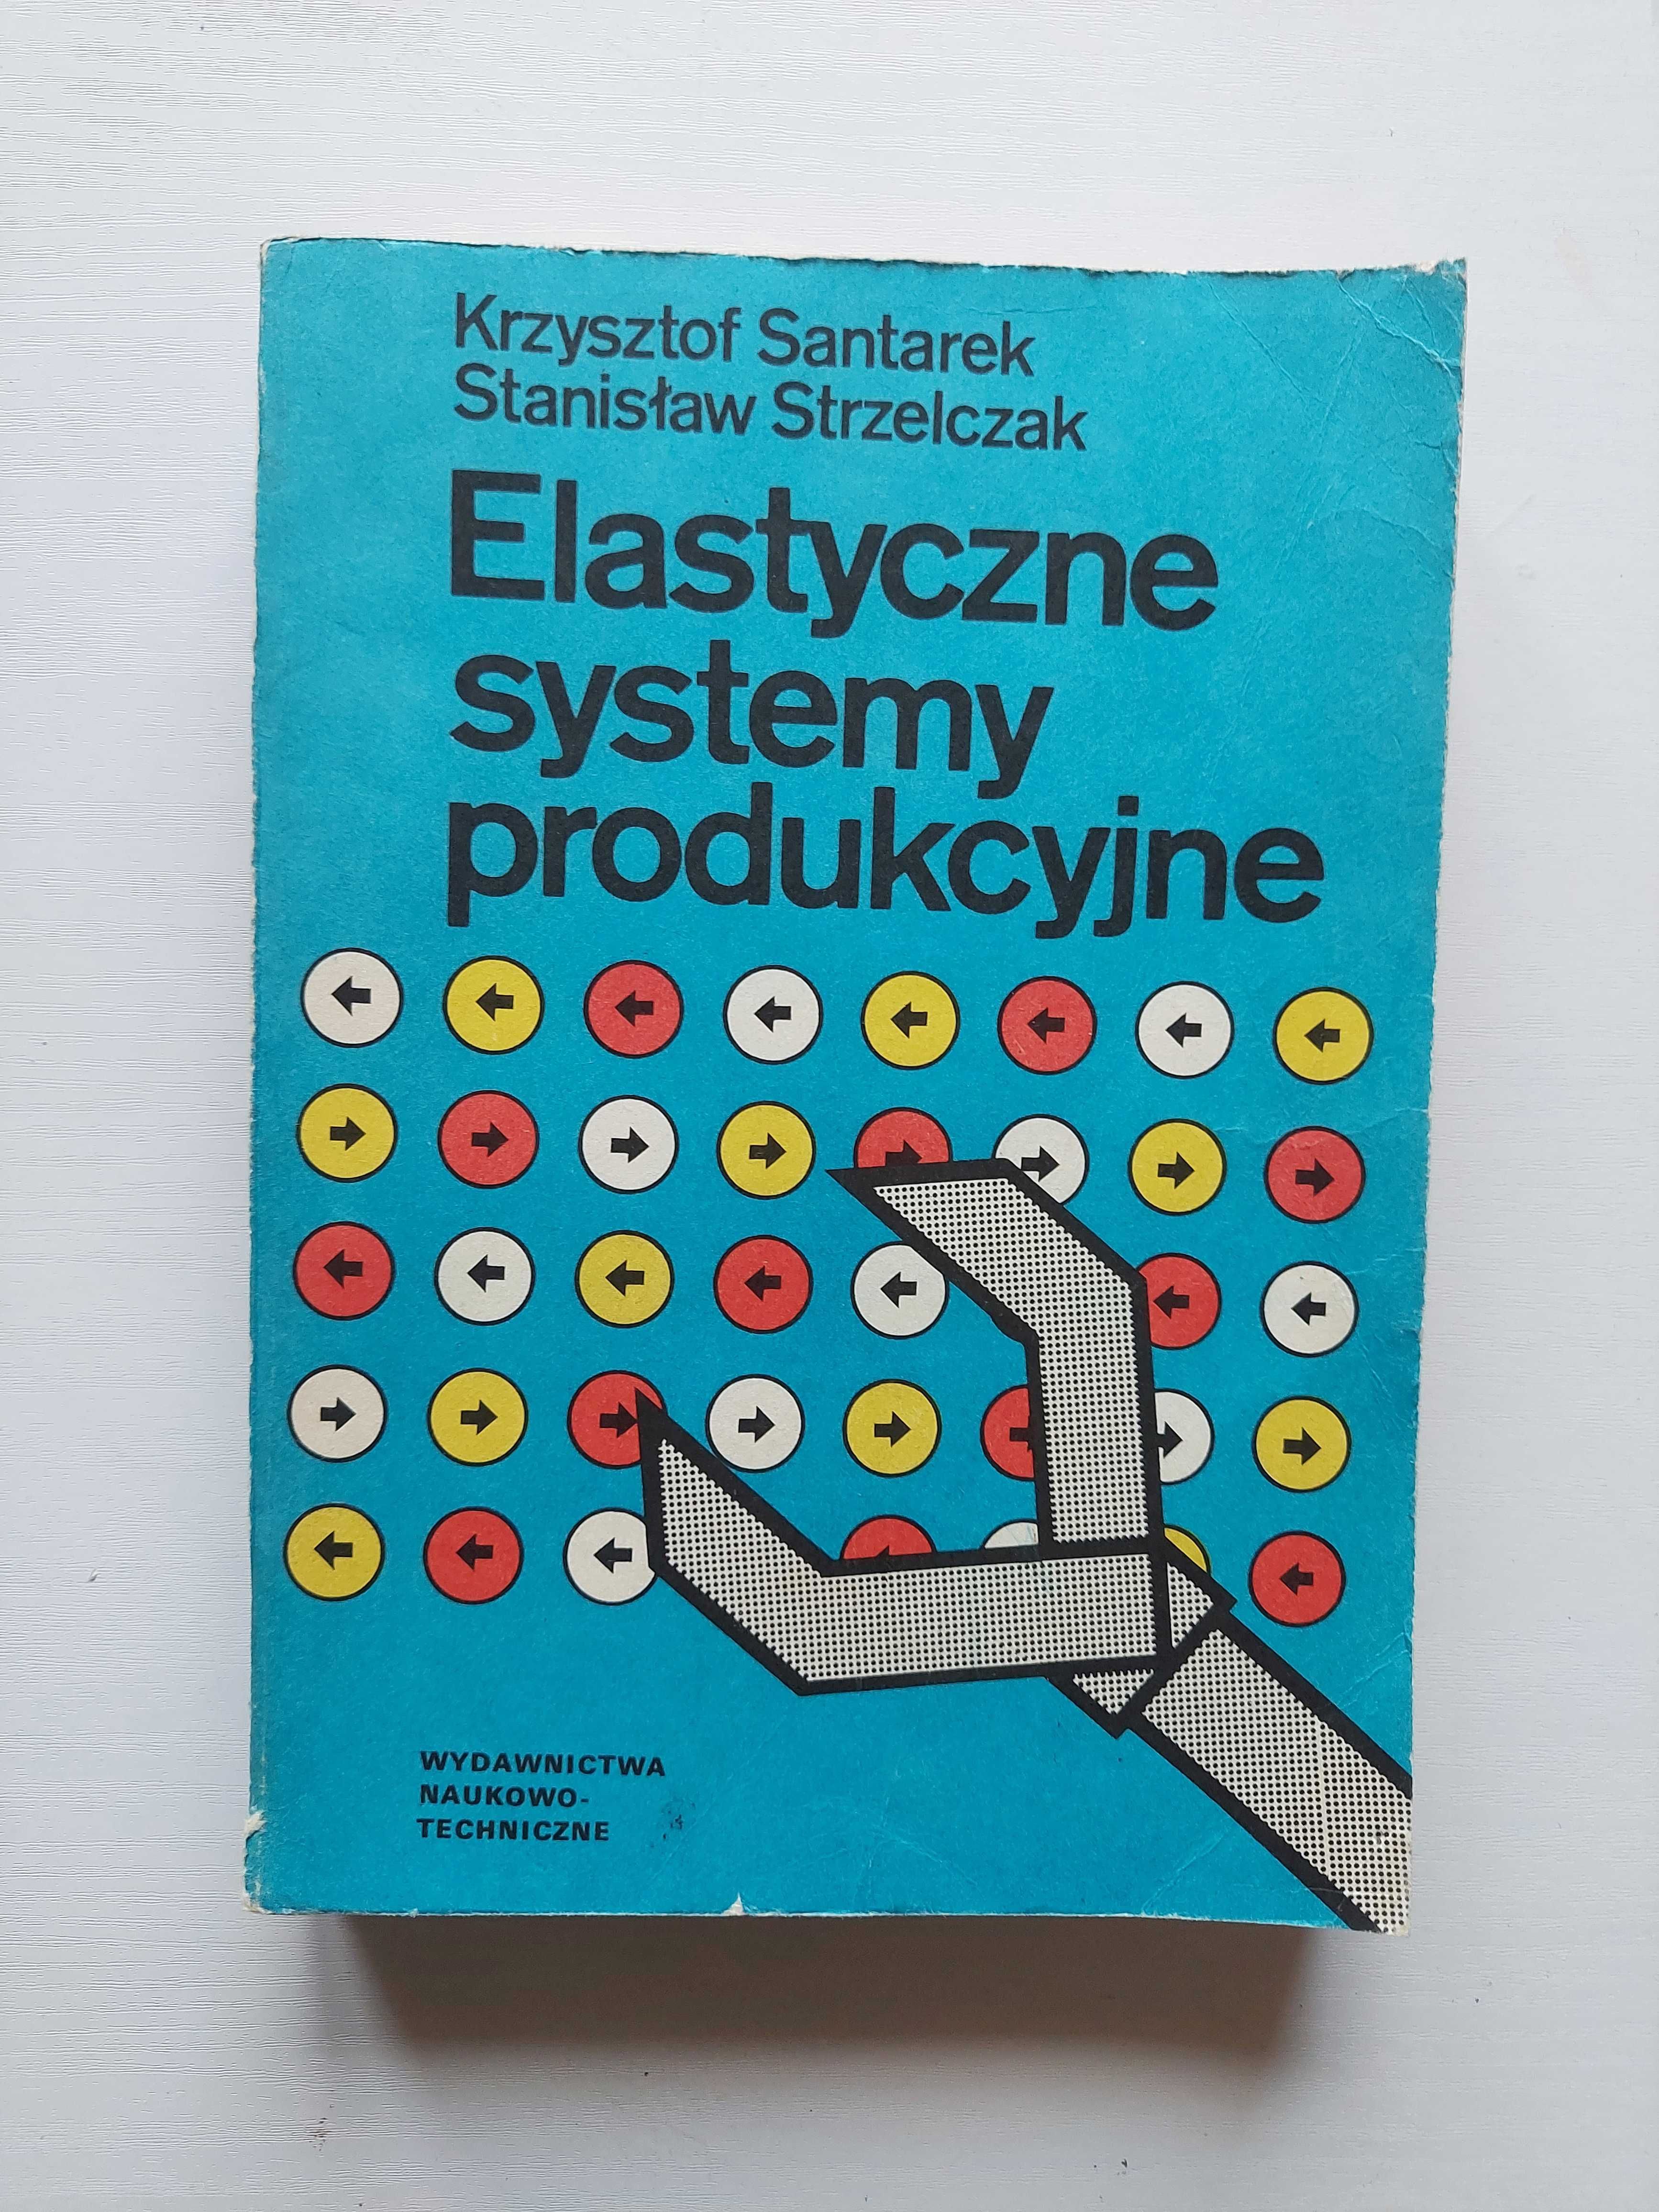 Książka "Elastyczne systemy produkcyjne"- Krzysztof Santarek